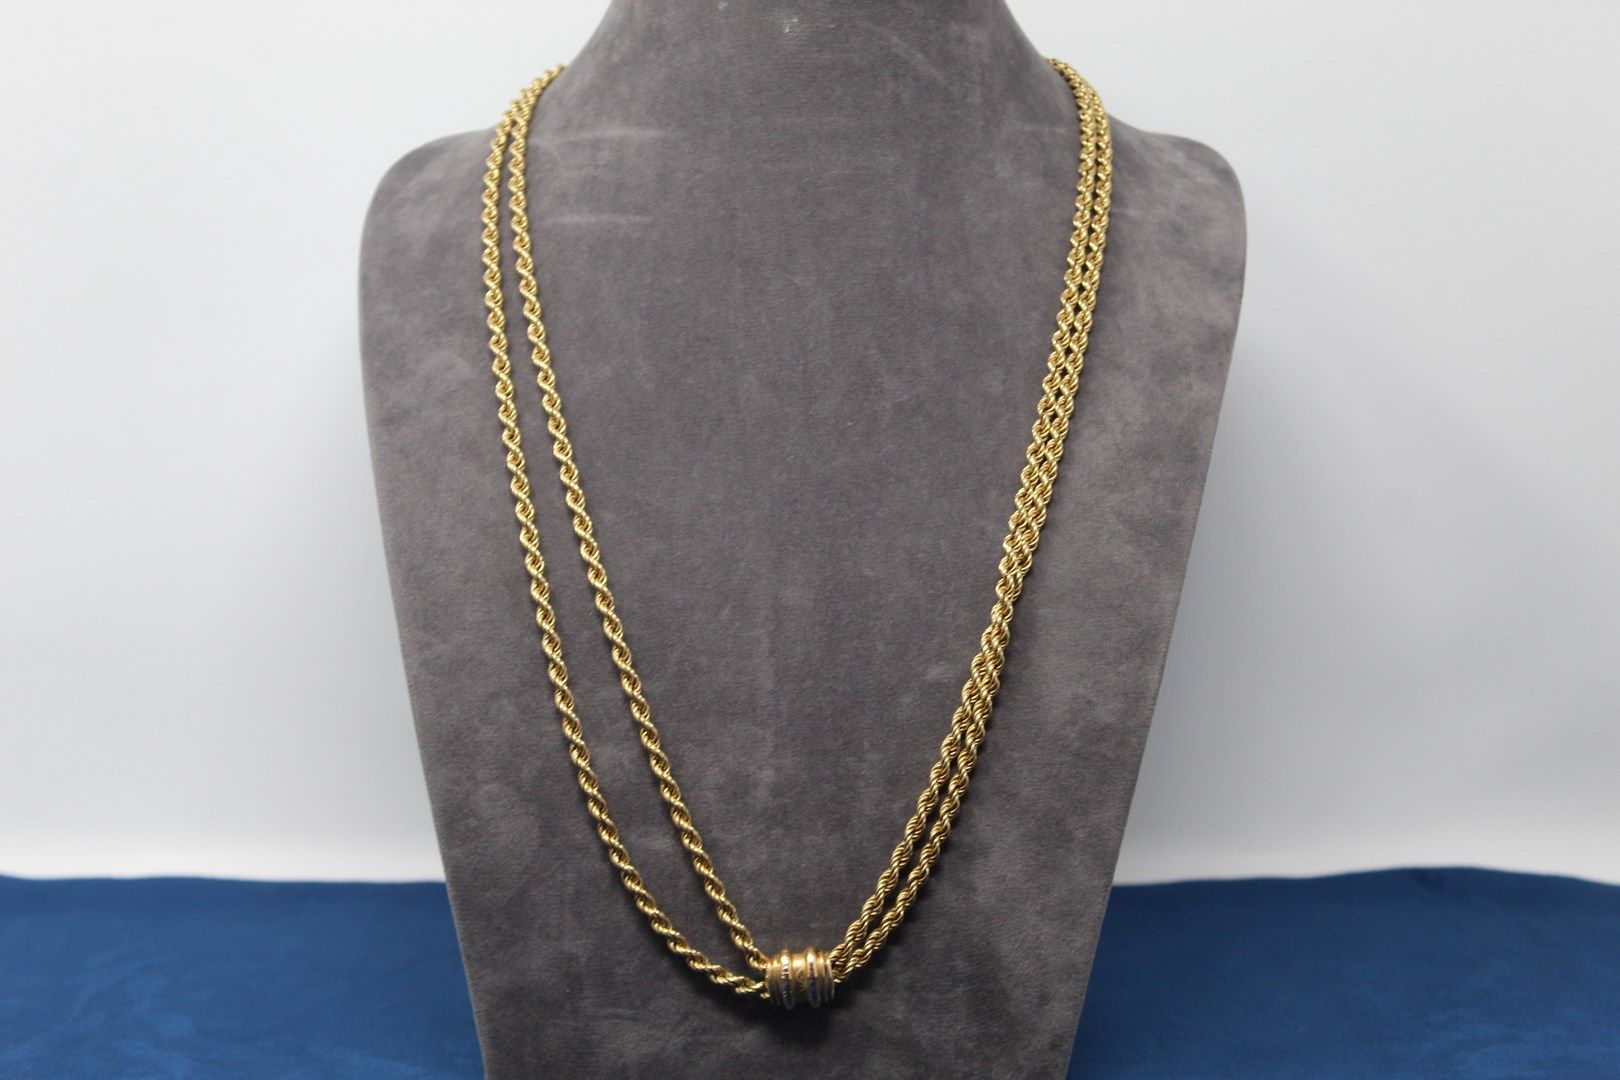 Null 重要的18K（750）黄金长项链。

颈部长度：139厘米。(如果加倍则为70厘米) - 重量：31.85克。